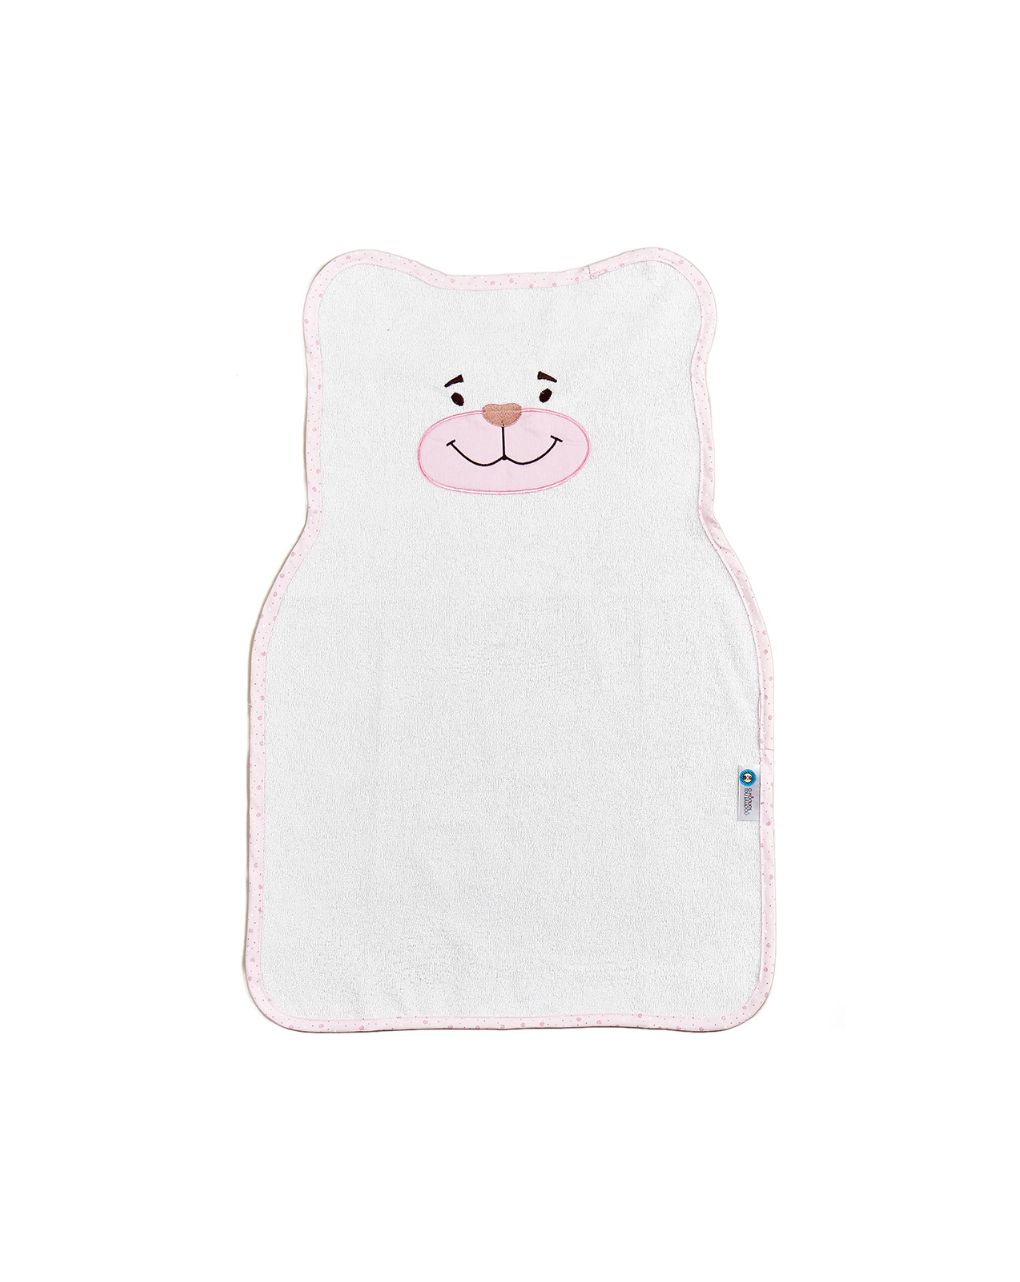 ο κόσμος του μωρού σελτεδάκι 46x70 cm πλαστικοποιημένης πετσέτας bear ροζ 11331